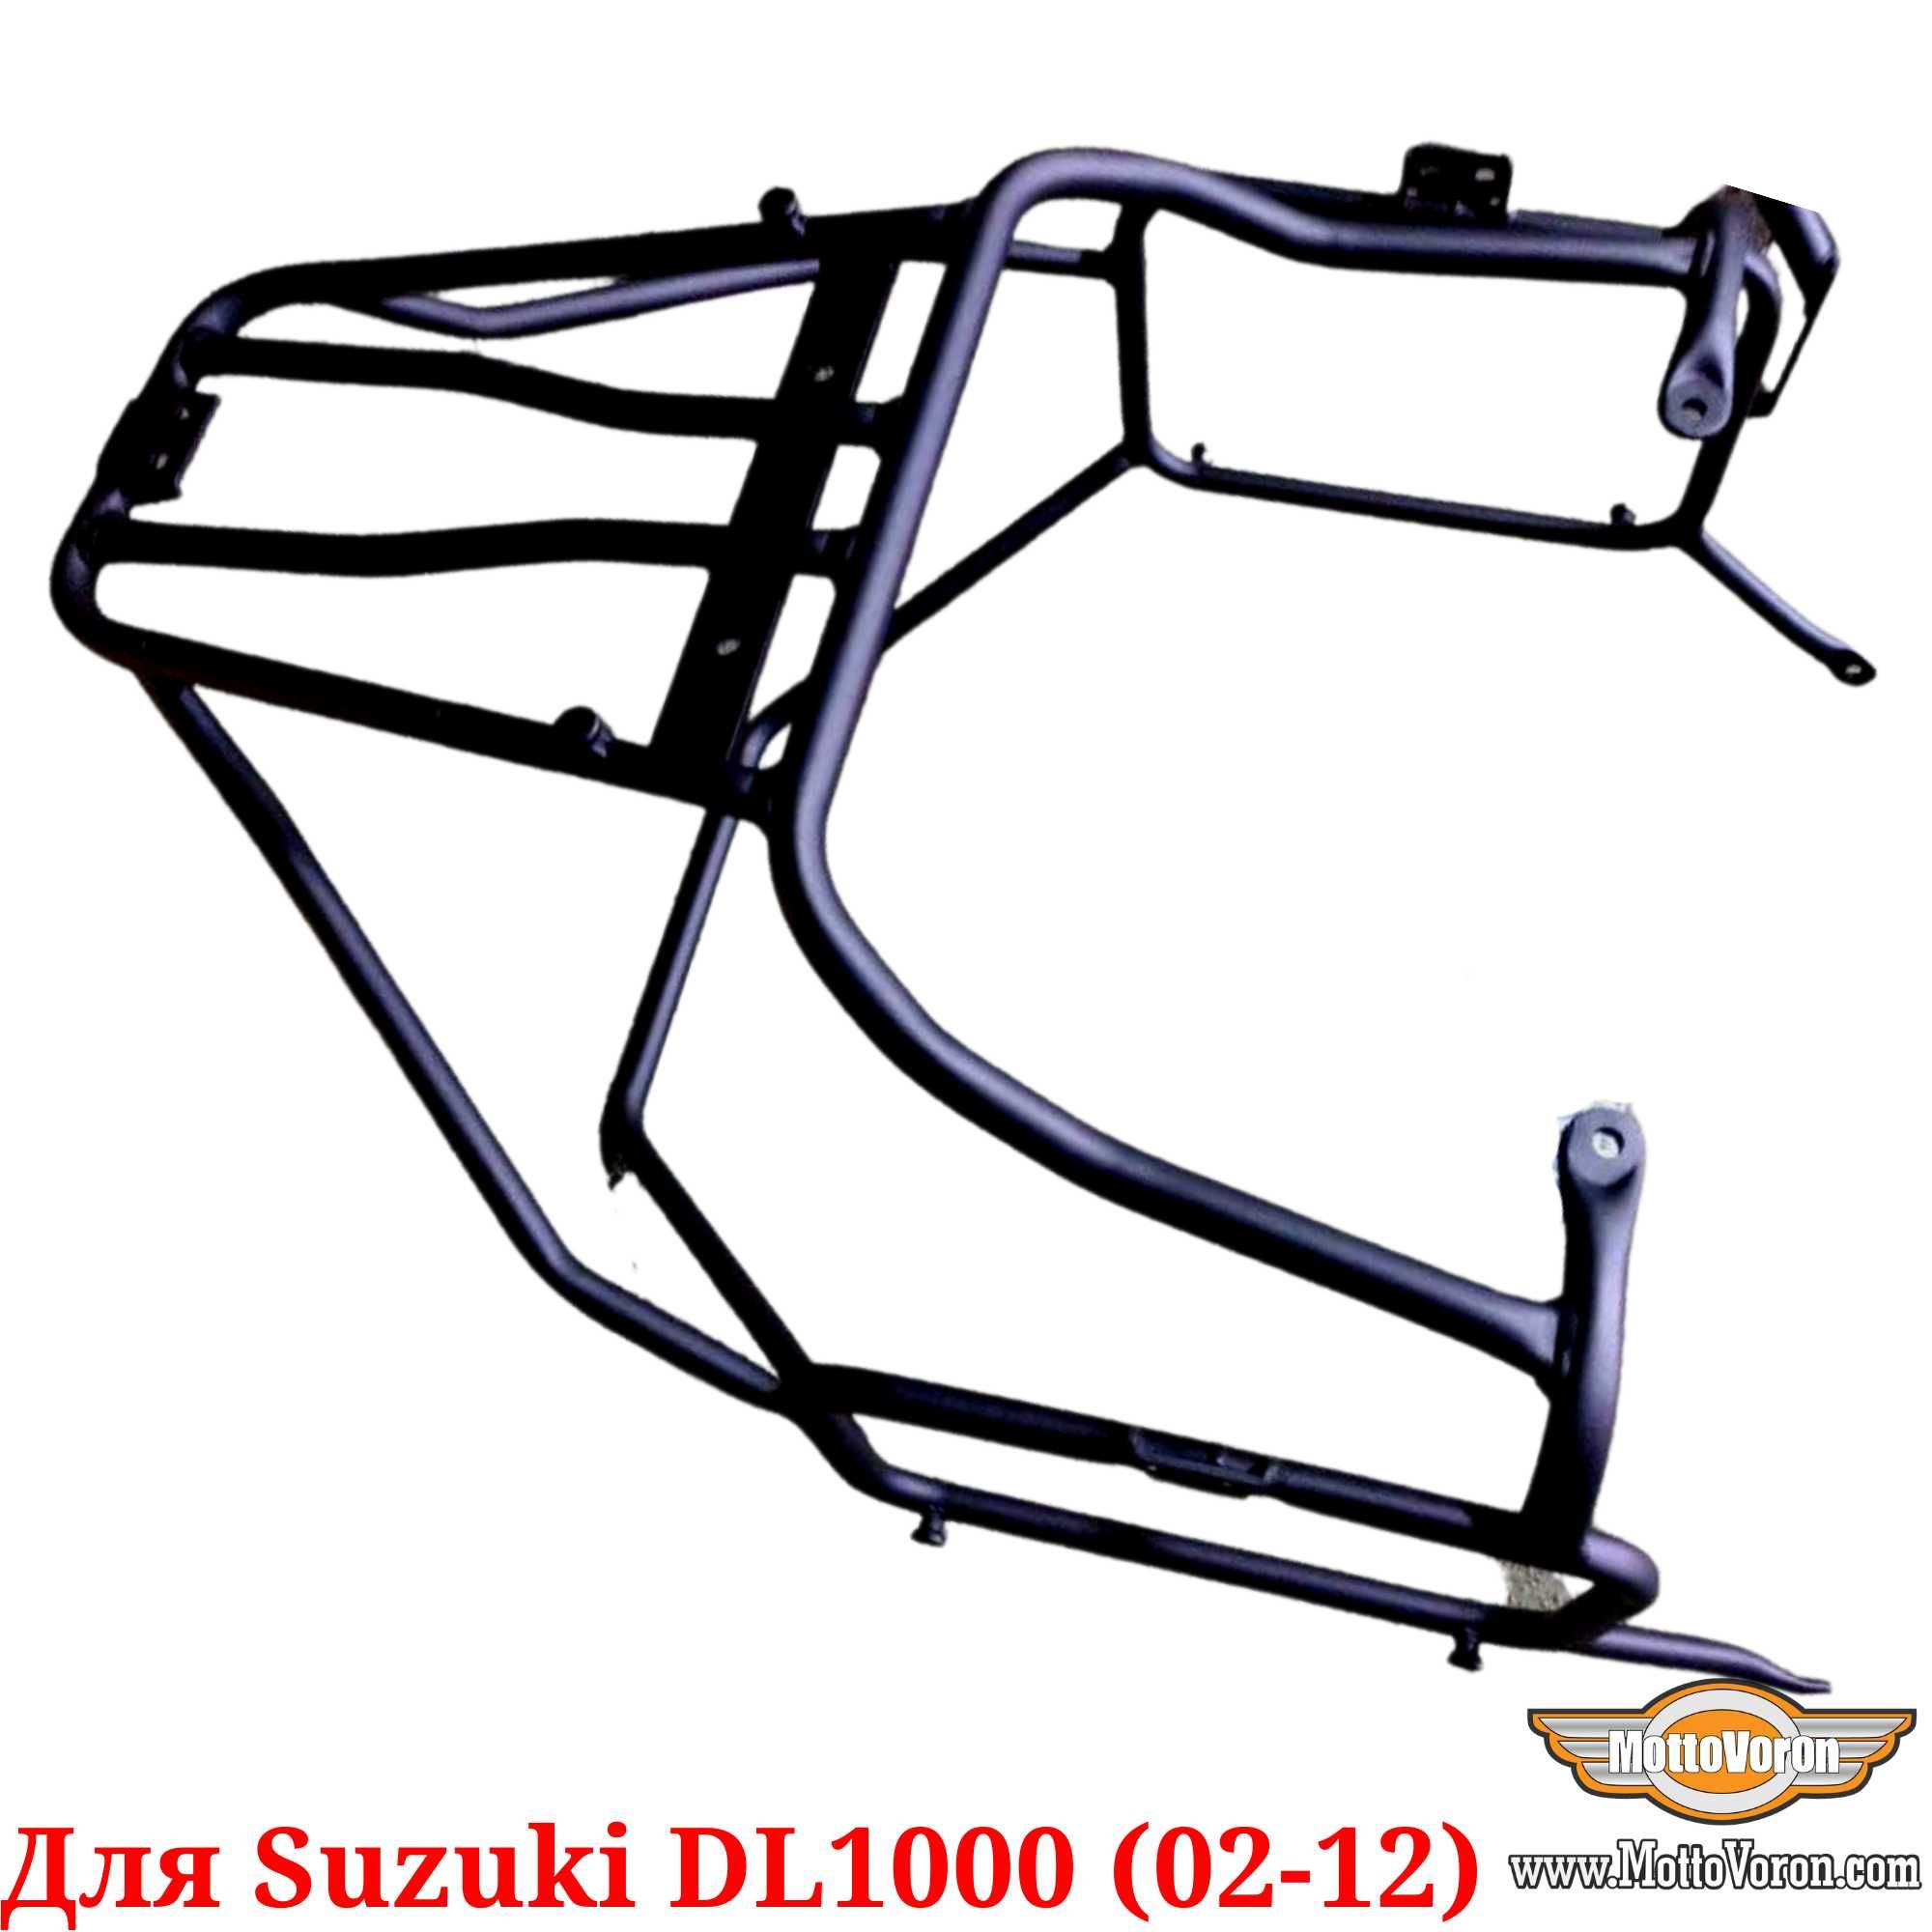 Suzuki DL 1000 Багажная система DL1000 V-Strom багажник рамки (02-12)